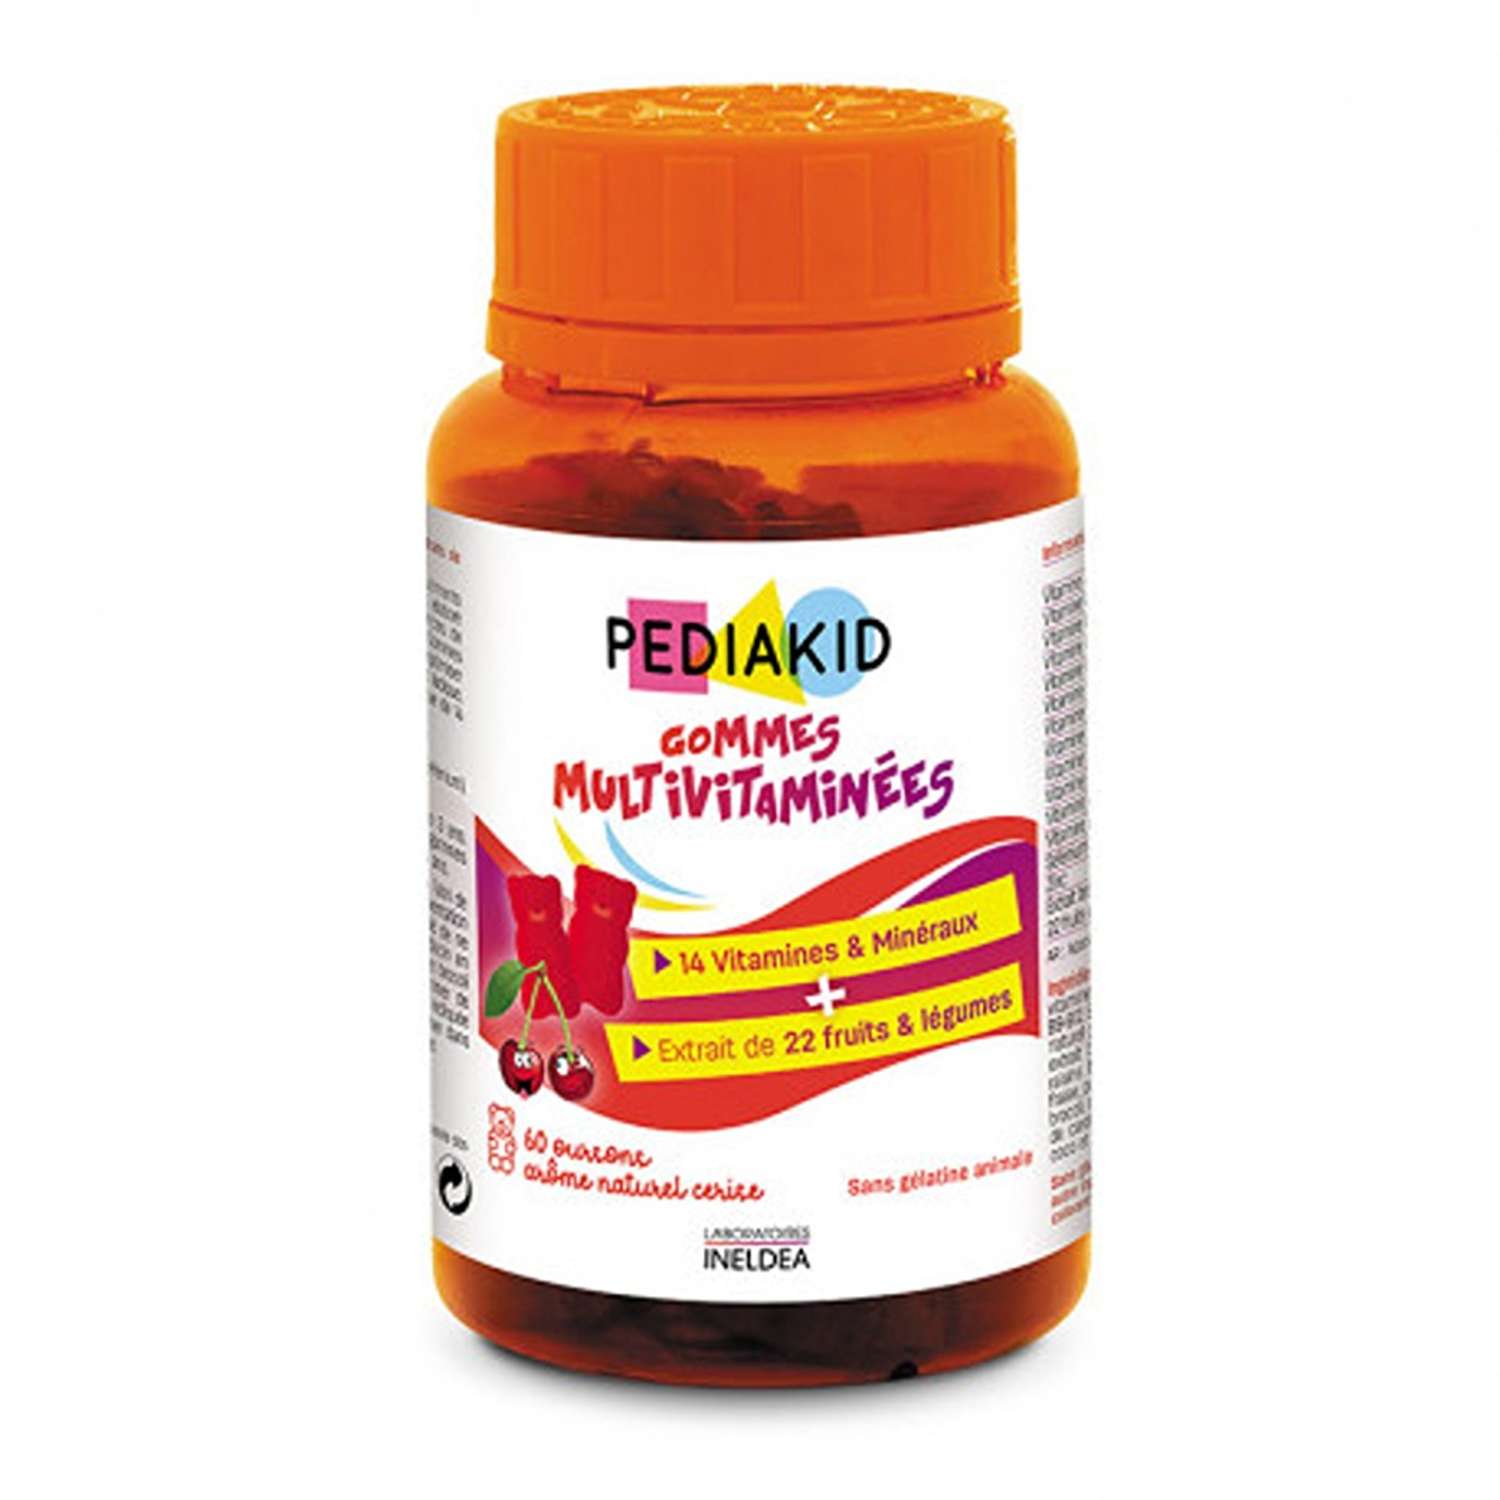 Pediakid vitamin. Педиакид витамин д3 для новорожденных. Pediakid 22 витамина. Педиакид сироп 22 витамина. Педиакид Омега 3 сироп.